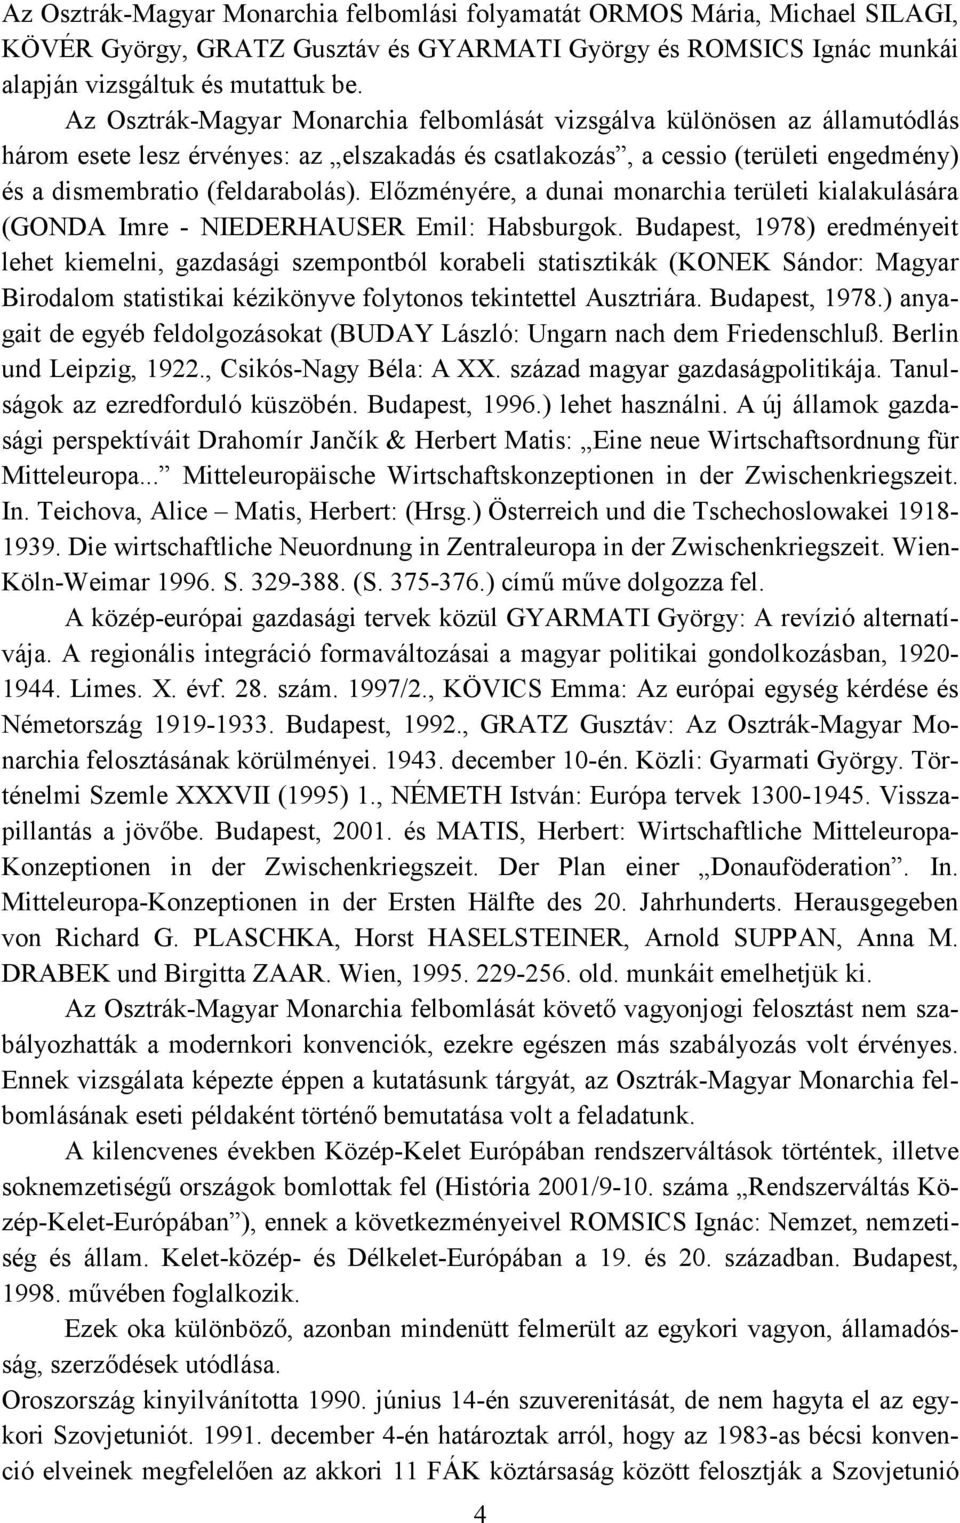 Előzményére, a dunai monarchia területi kialakulására (GONDA Imre - NIEDERHAUSER Emil: Habsburgok.